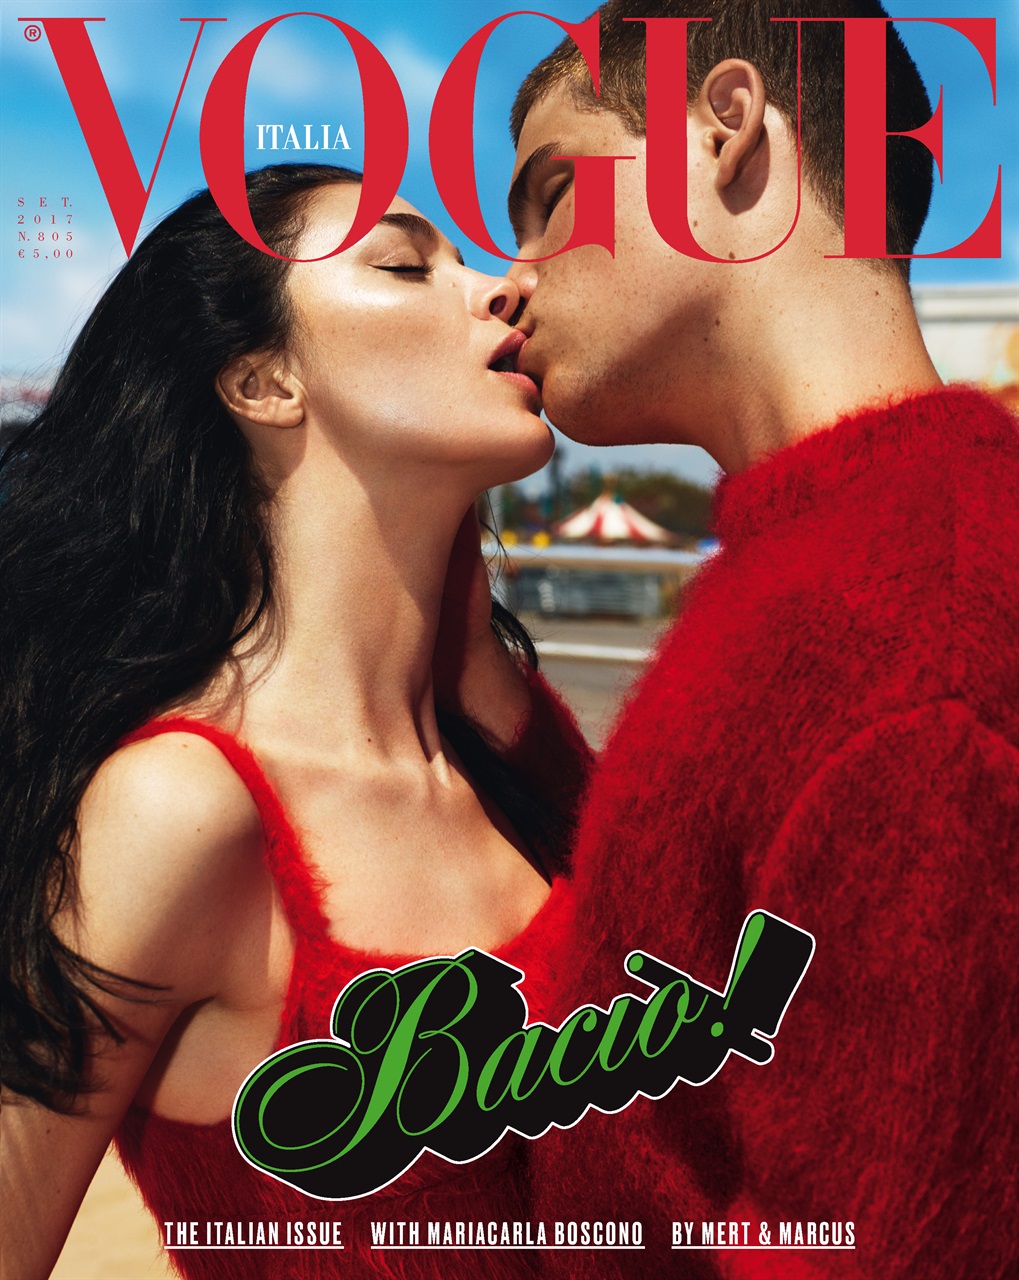 Vogue Italia September 2017 Cover Story Editorial